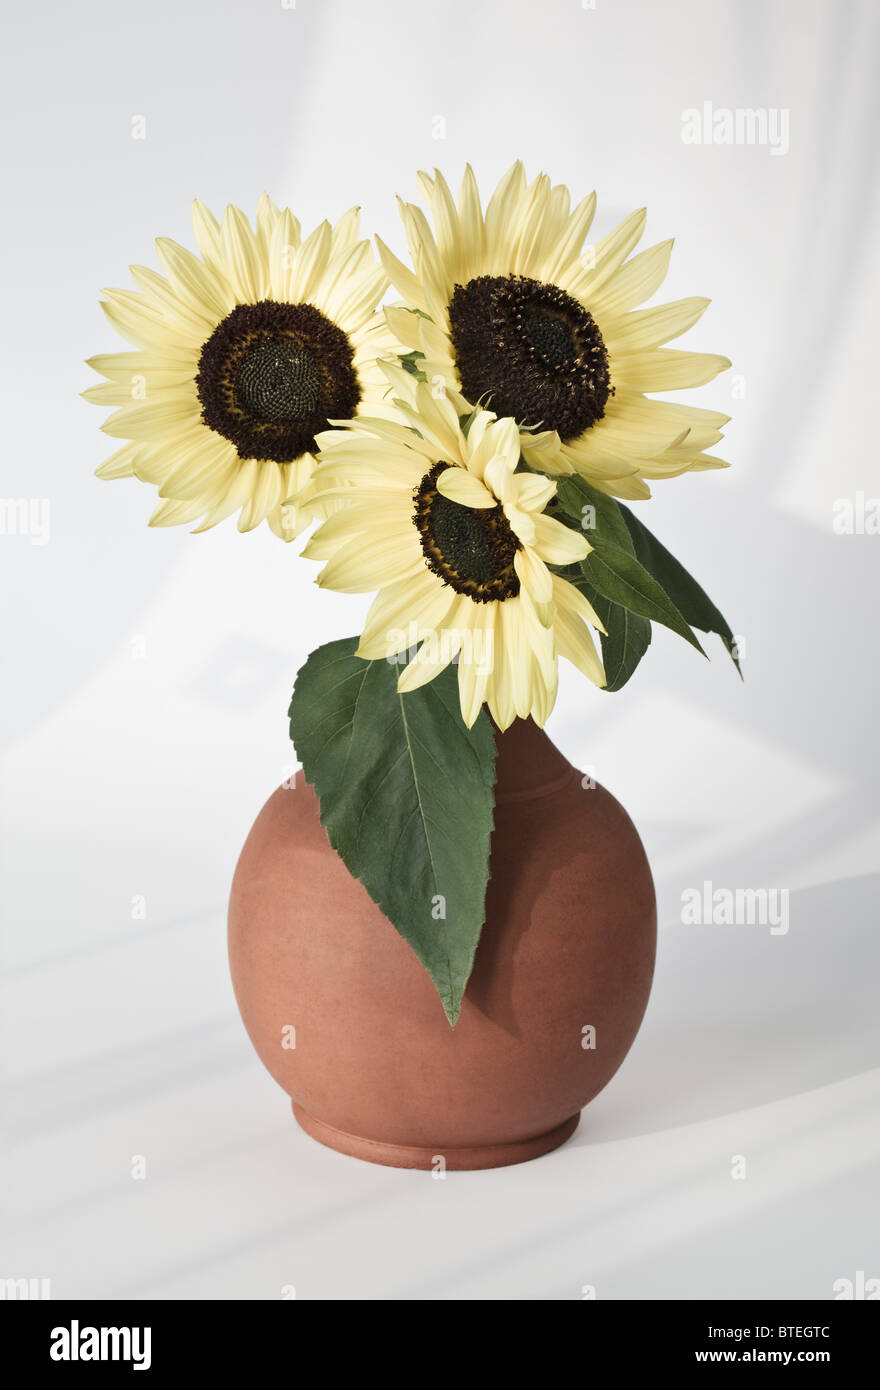 Drei Sonnenblumen in einer Vase Stockfotografie - Alamy